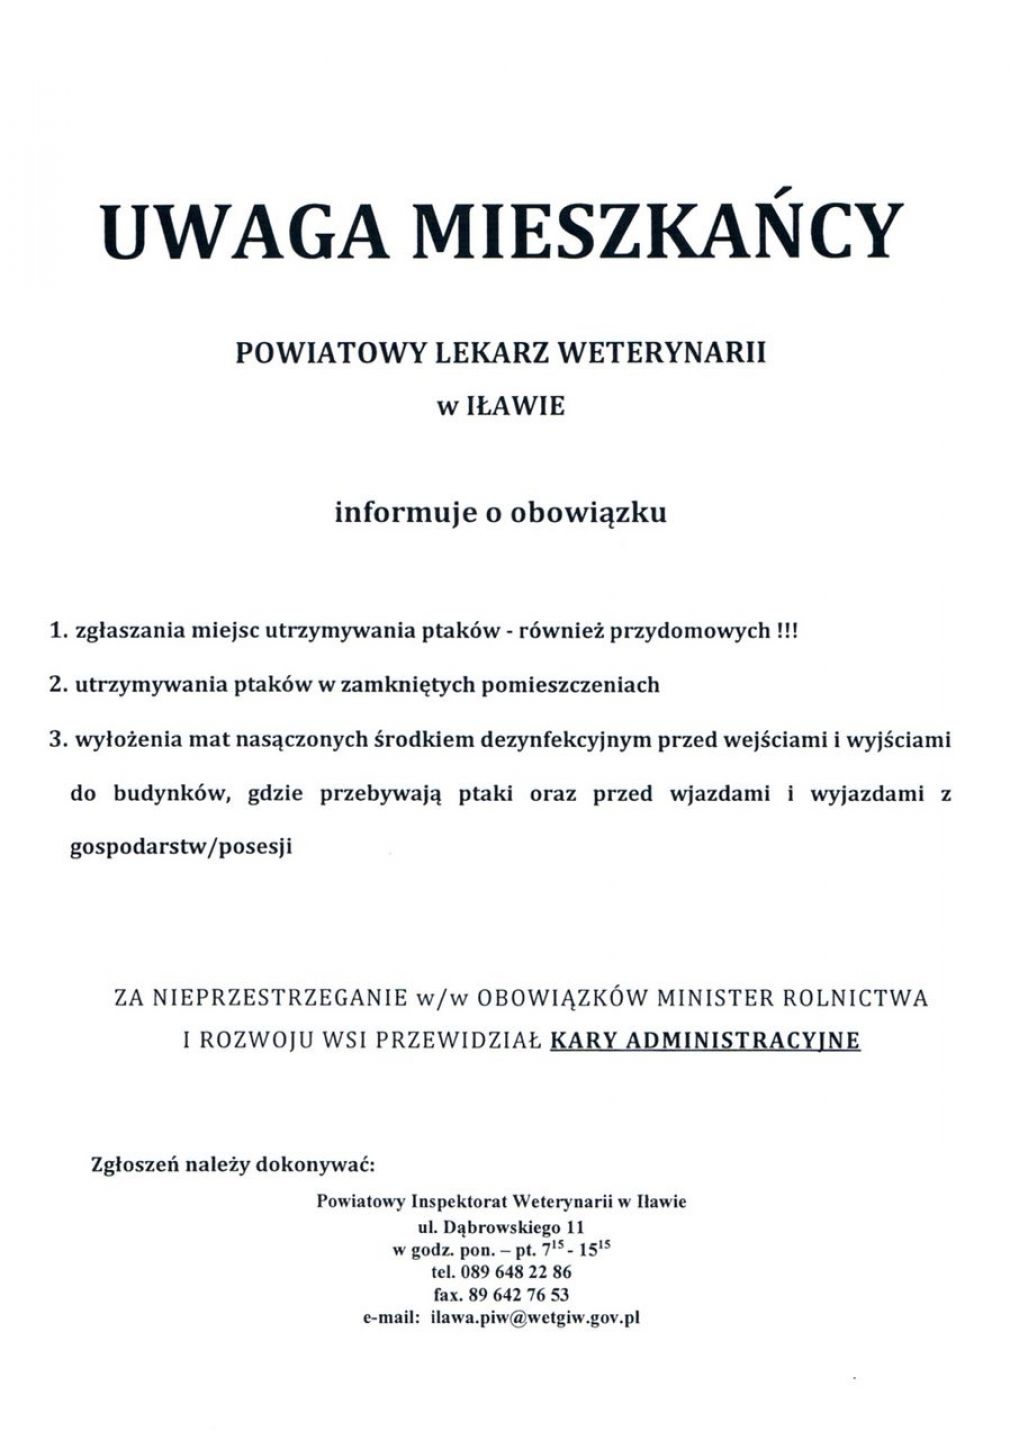 Komunikat Powiatowego Lekarza Weterynarii w Iławie